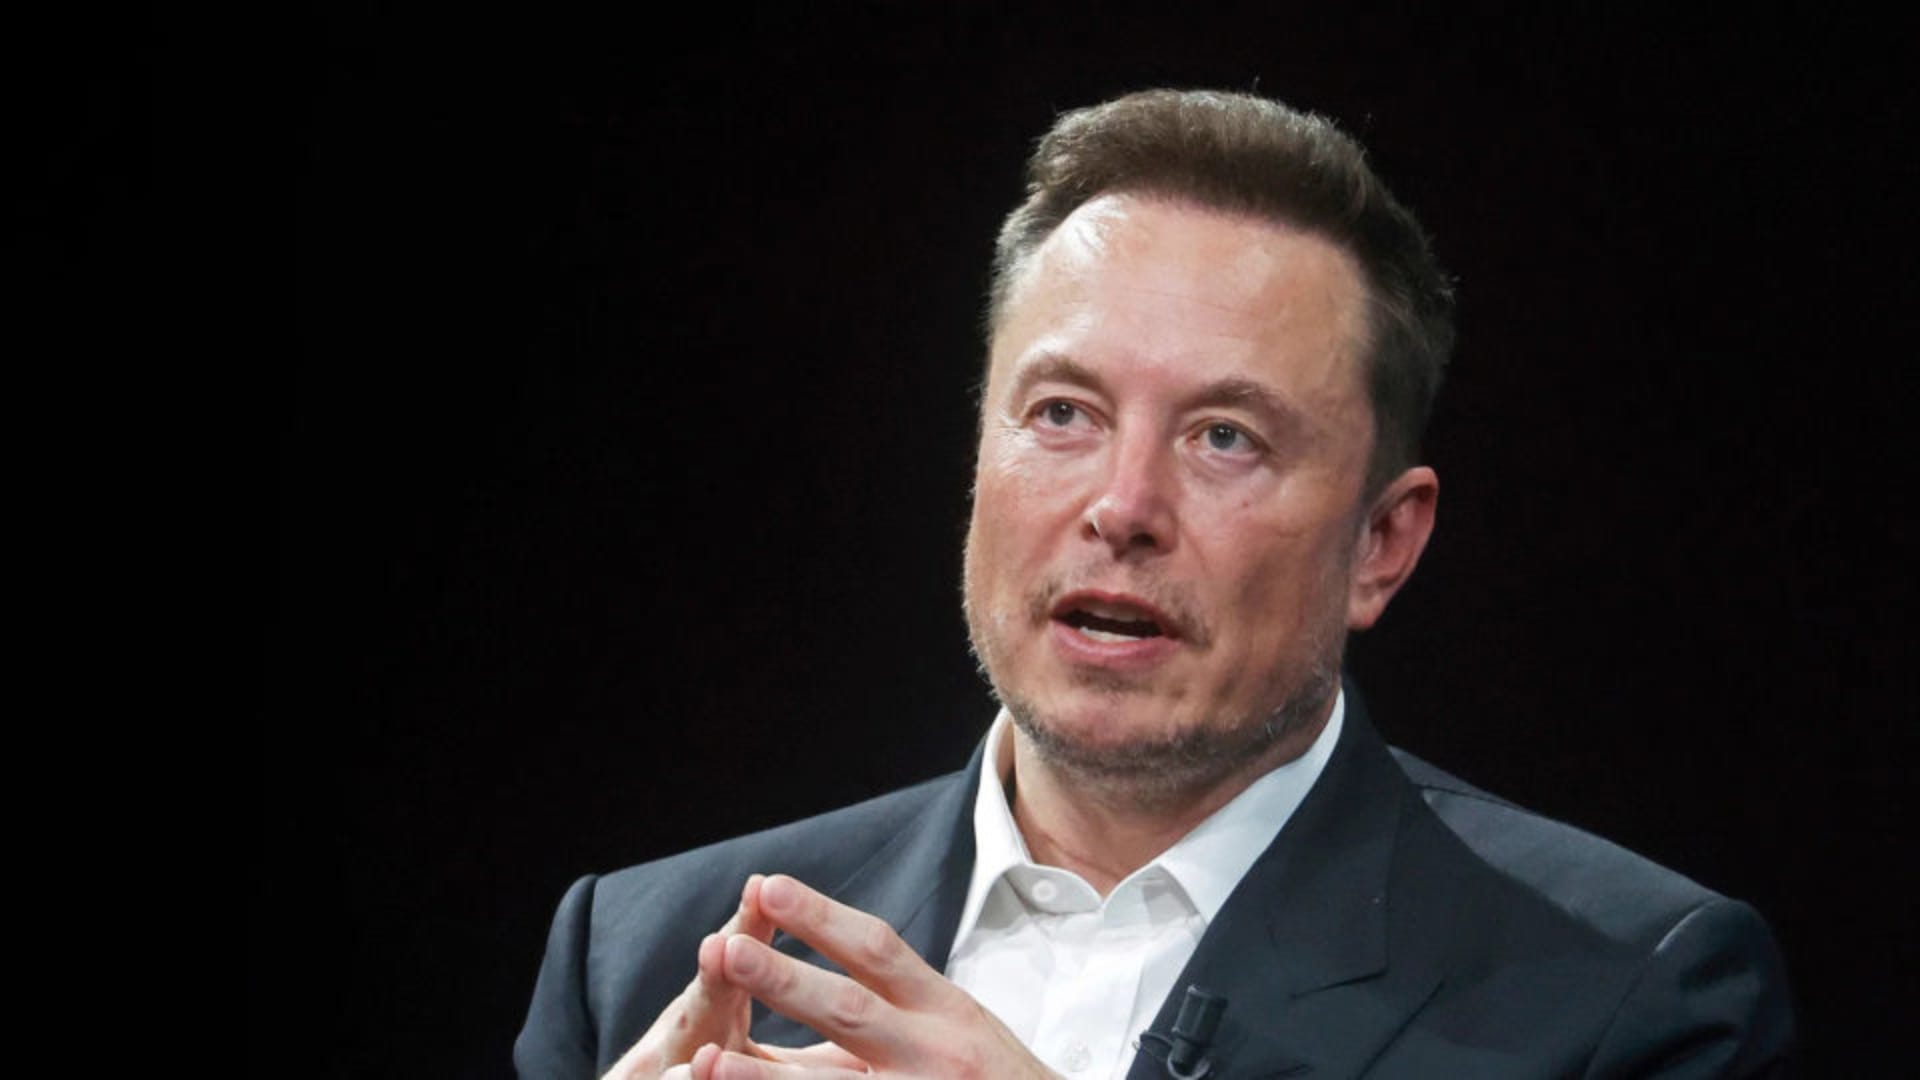 Εκρηκτικές δηλώσεις του Elon Musk για τις χρηματοπιστωτικές αγορές, τους παθητικούς επενδυτές και την πλατφόρμα Χ